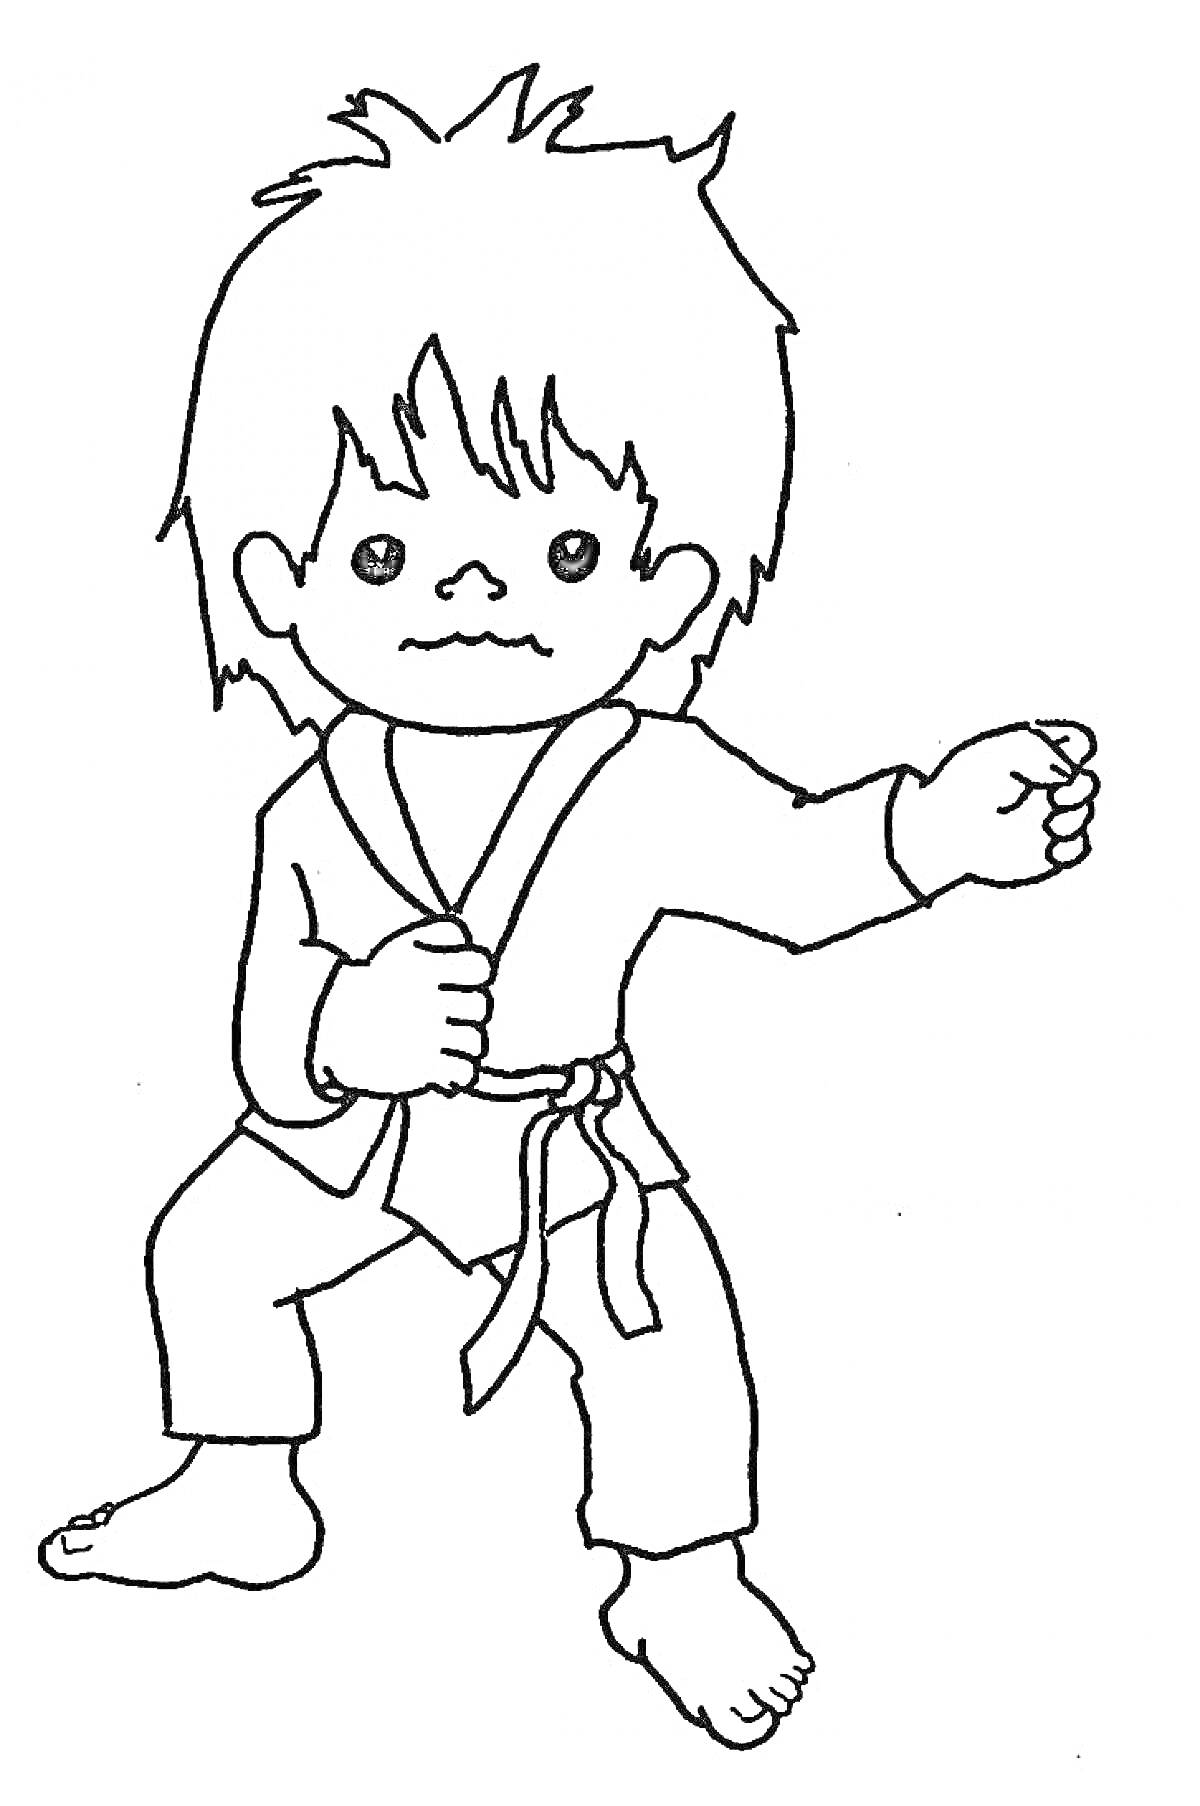 Ребенок с прической и в кимоно выполняет karate прием, подняв руку и с выражением лица